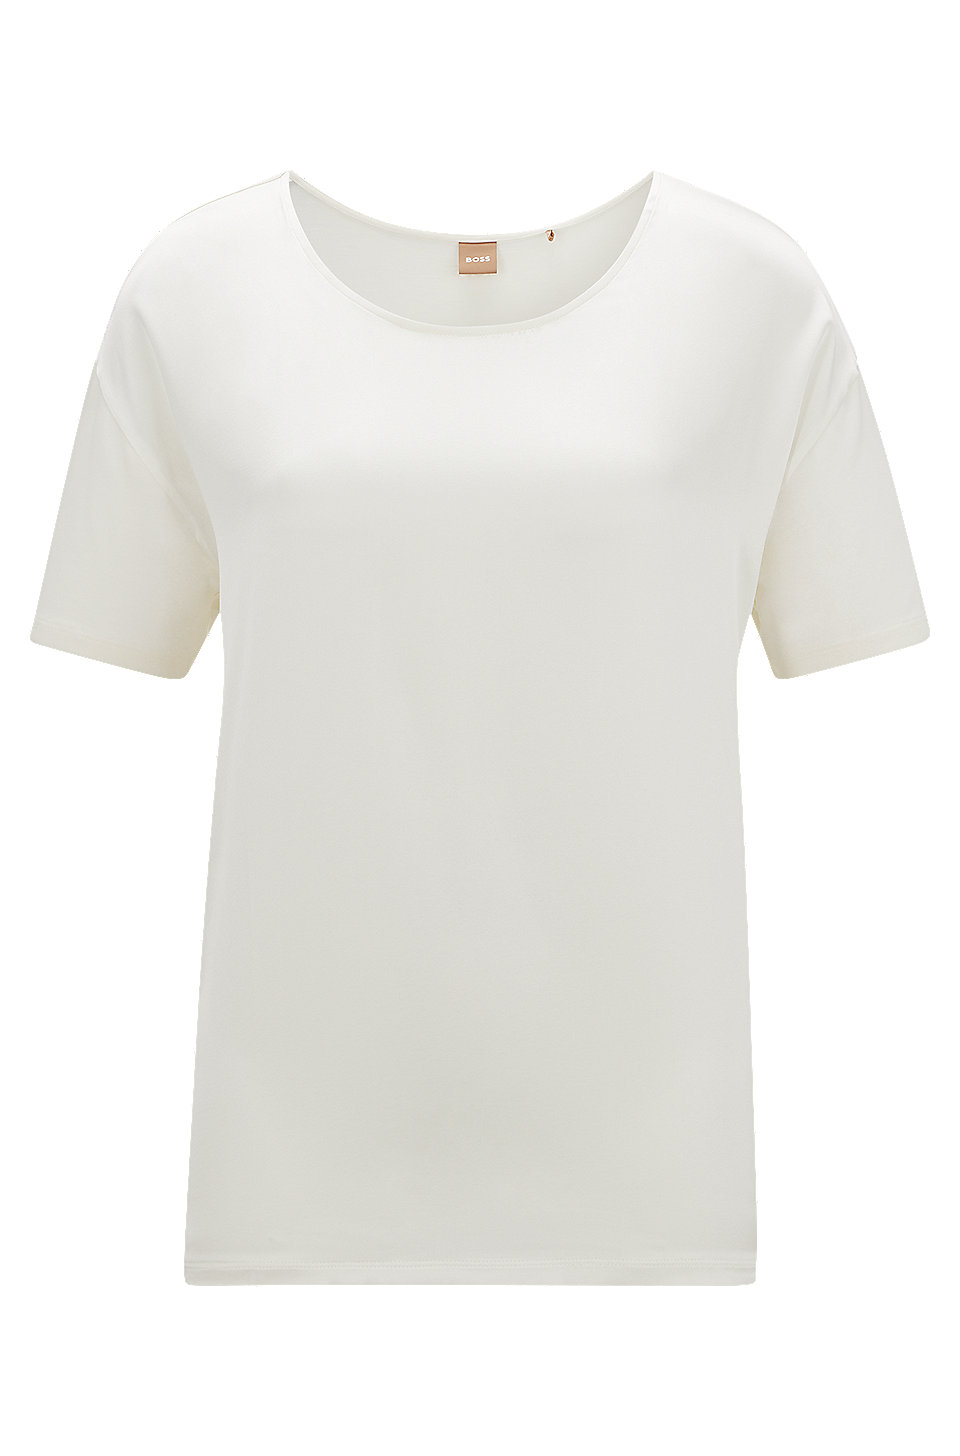 discount 55% VILA T-shirt White S WOMEN FASHION Shirts & T-shirts Lace openwork 